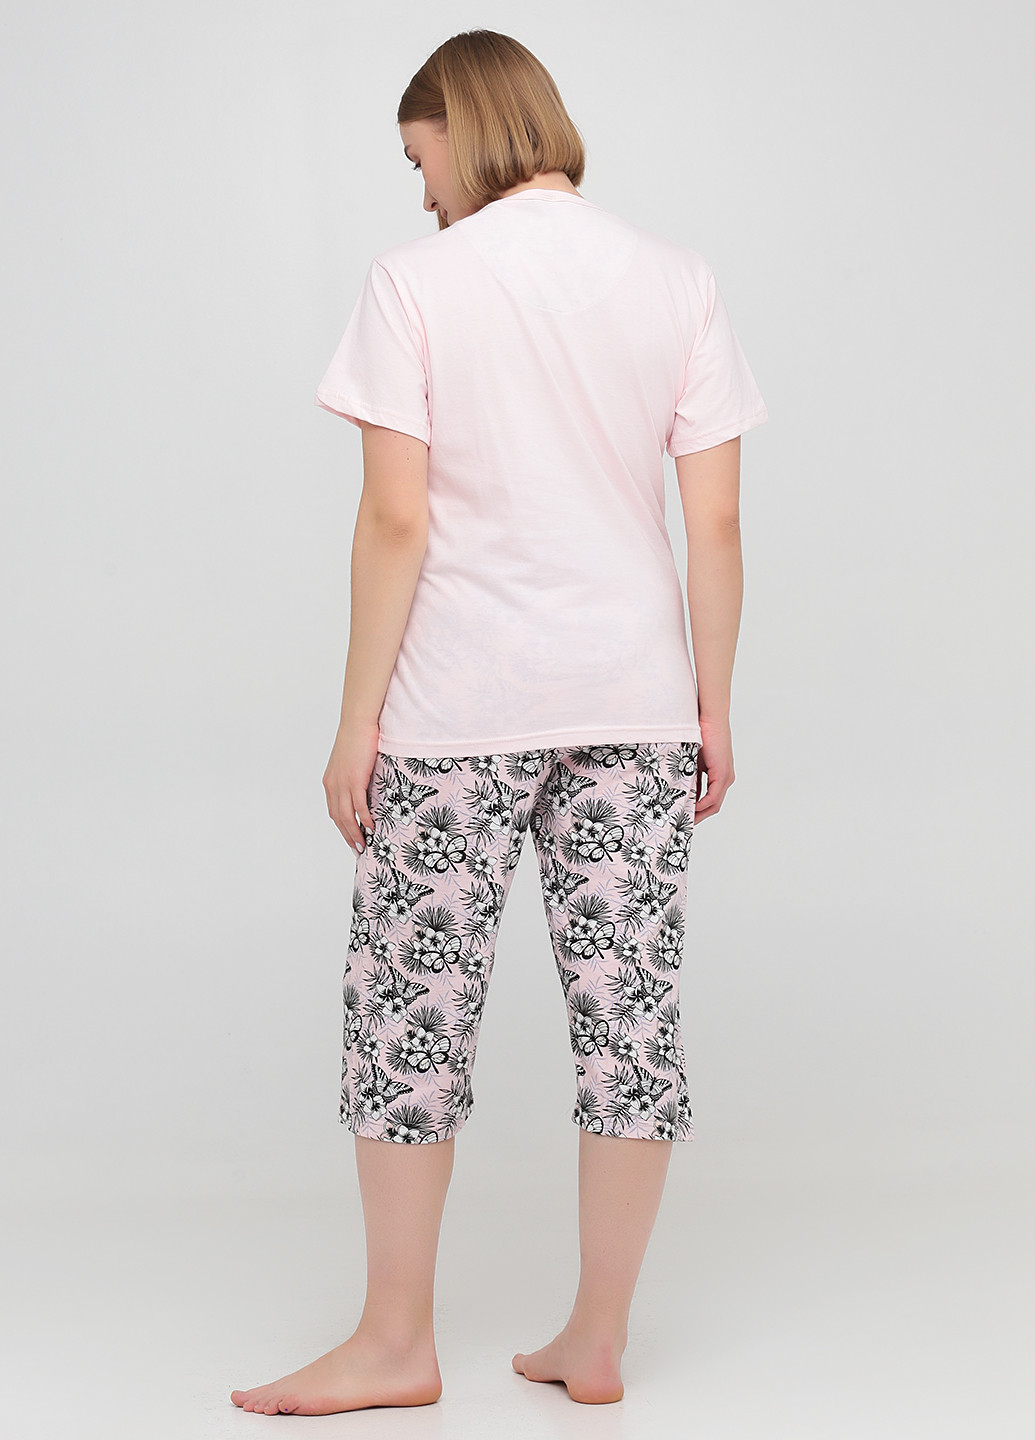 Розовая всесезон пижама (футболка, бриджи) футболка + бриджи Boyraz